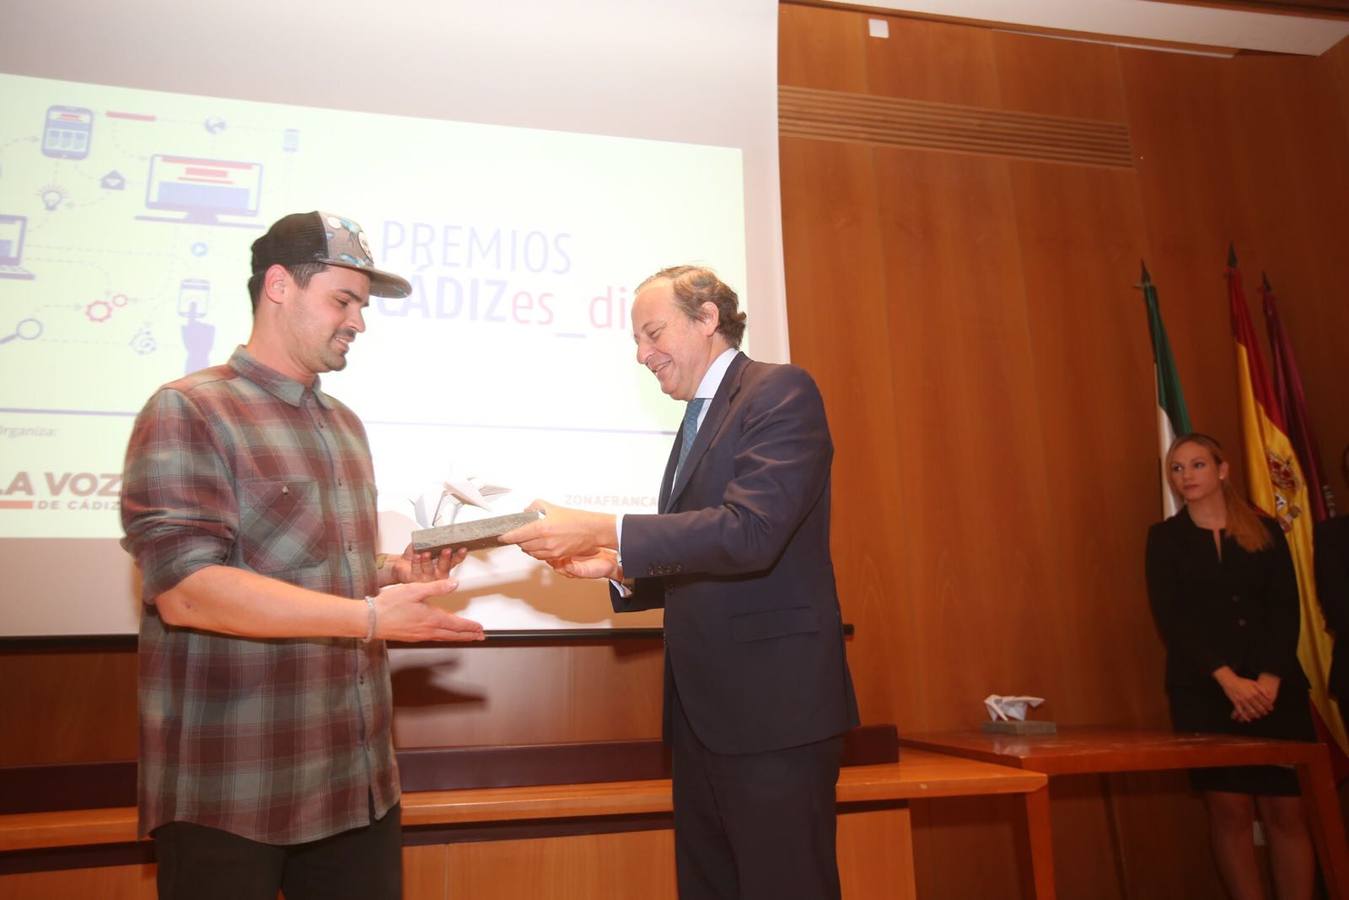 LA VOZ entrega sus premios Cádizes_digital a los mejores proyectos locales en internet